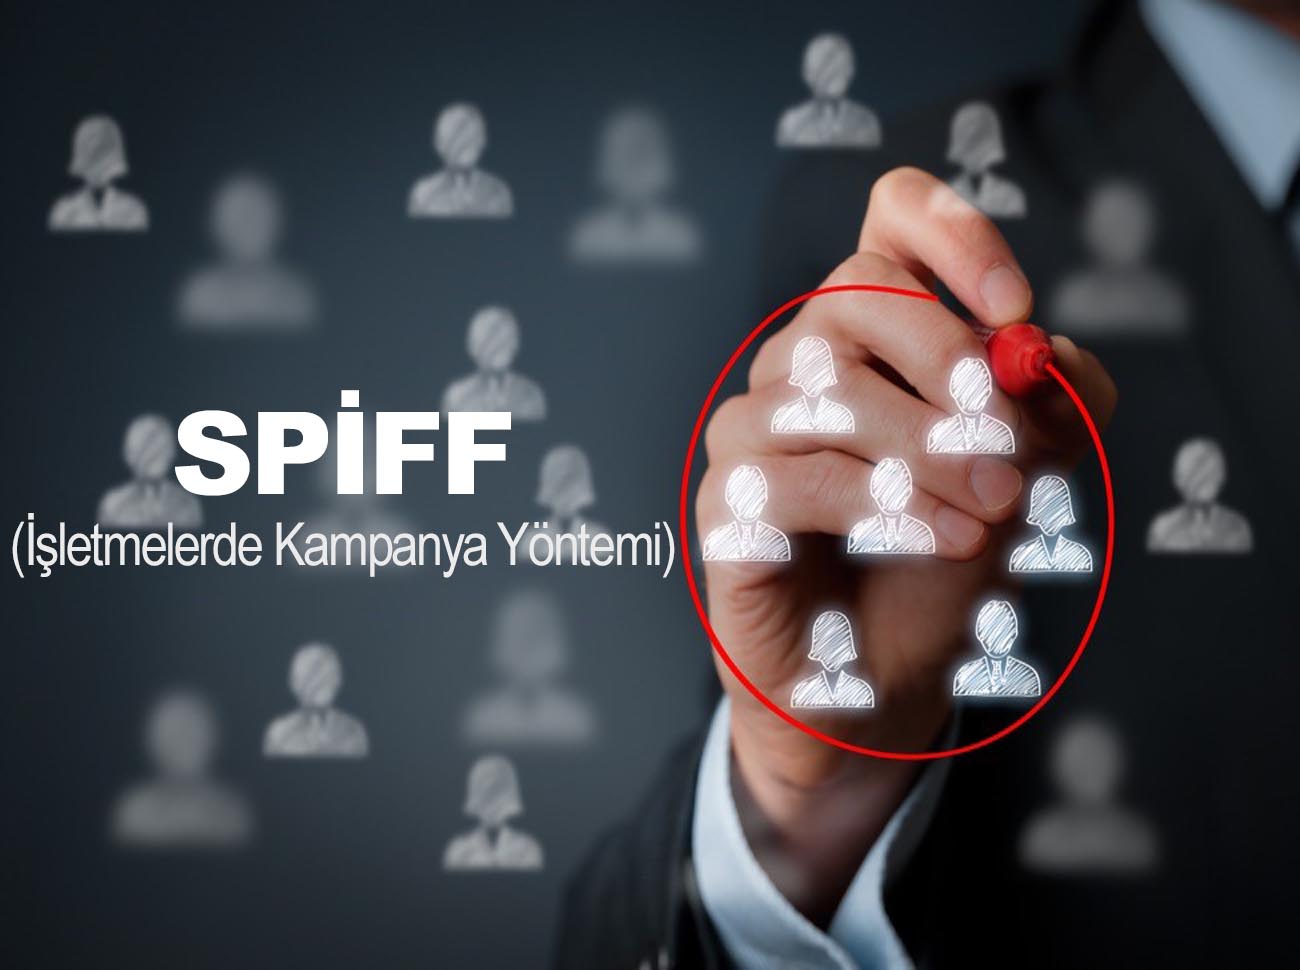 SPIFF – İşletmelerde Kampanya Yöntemi